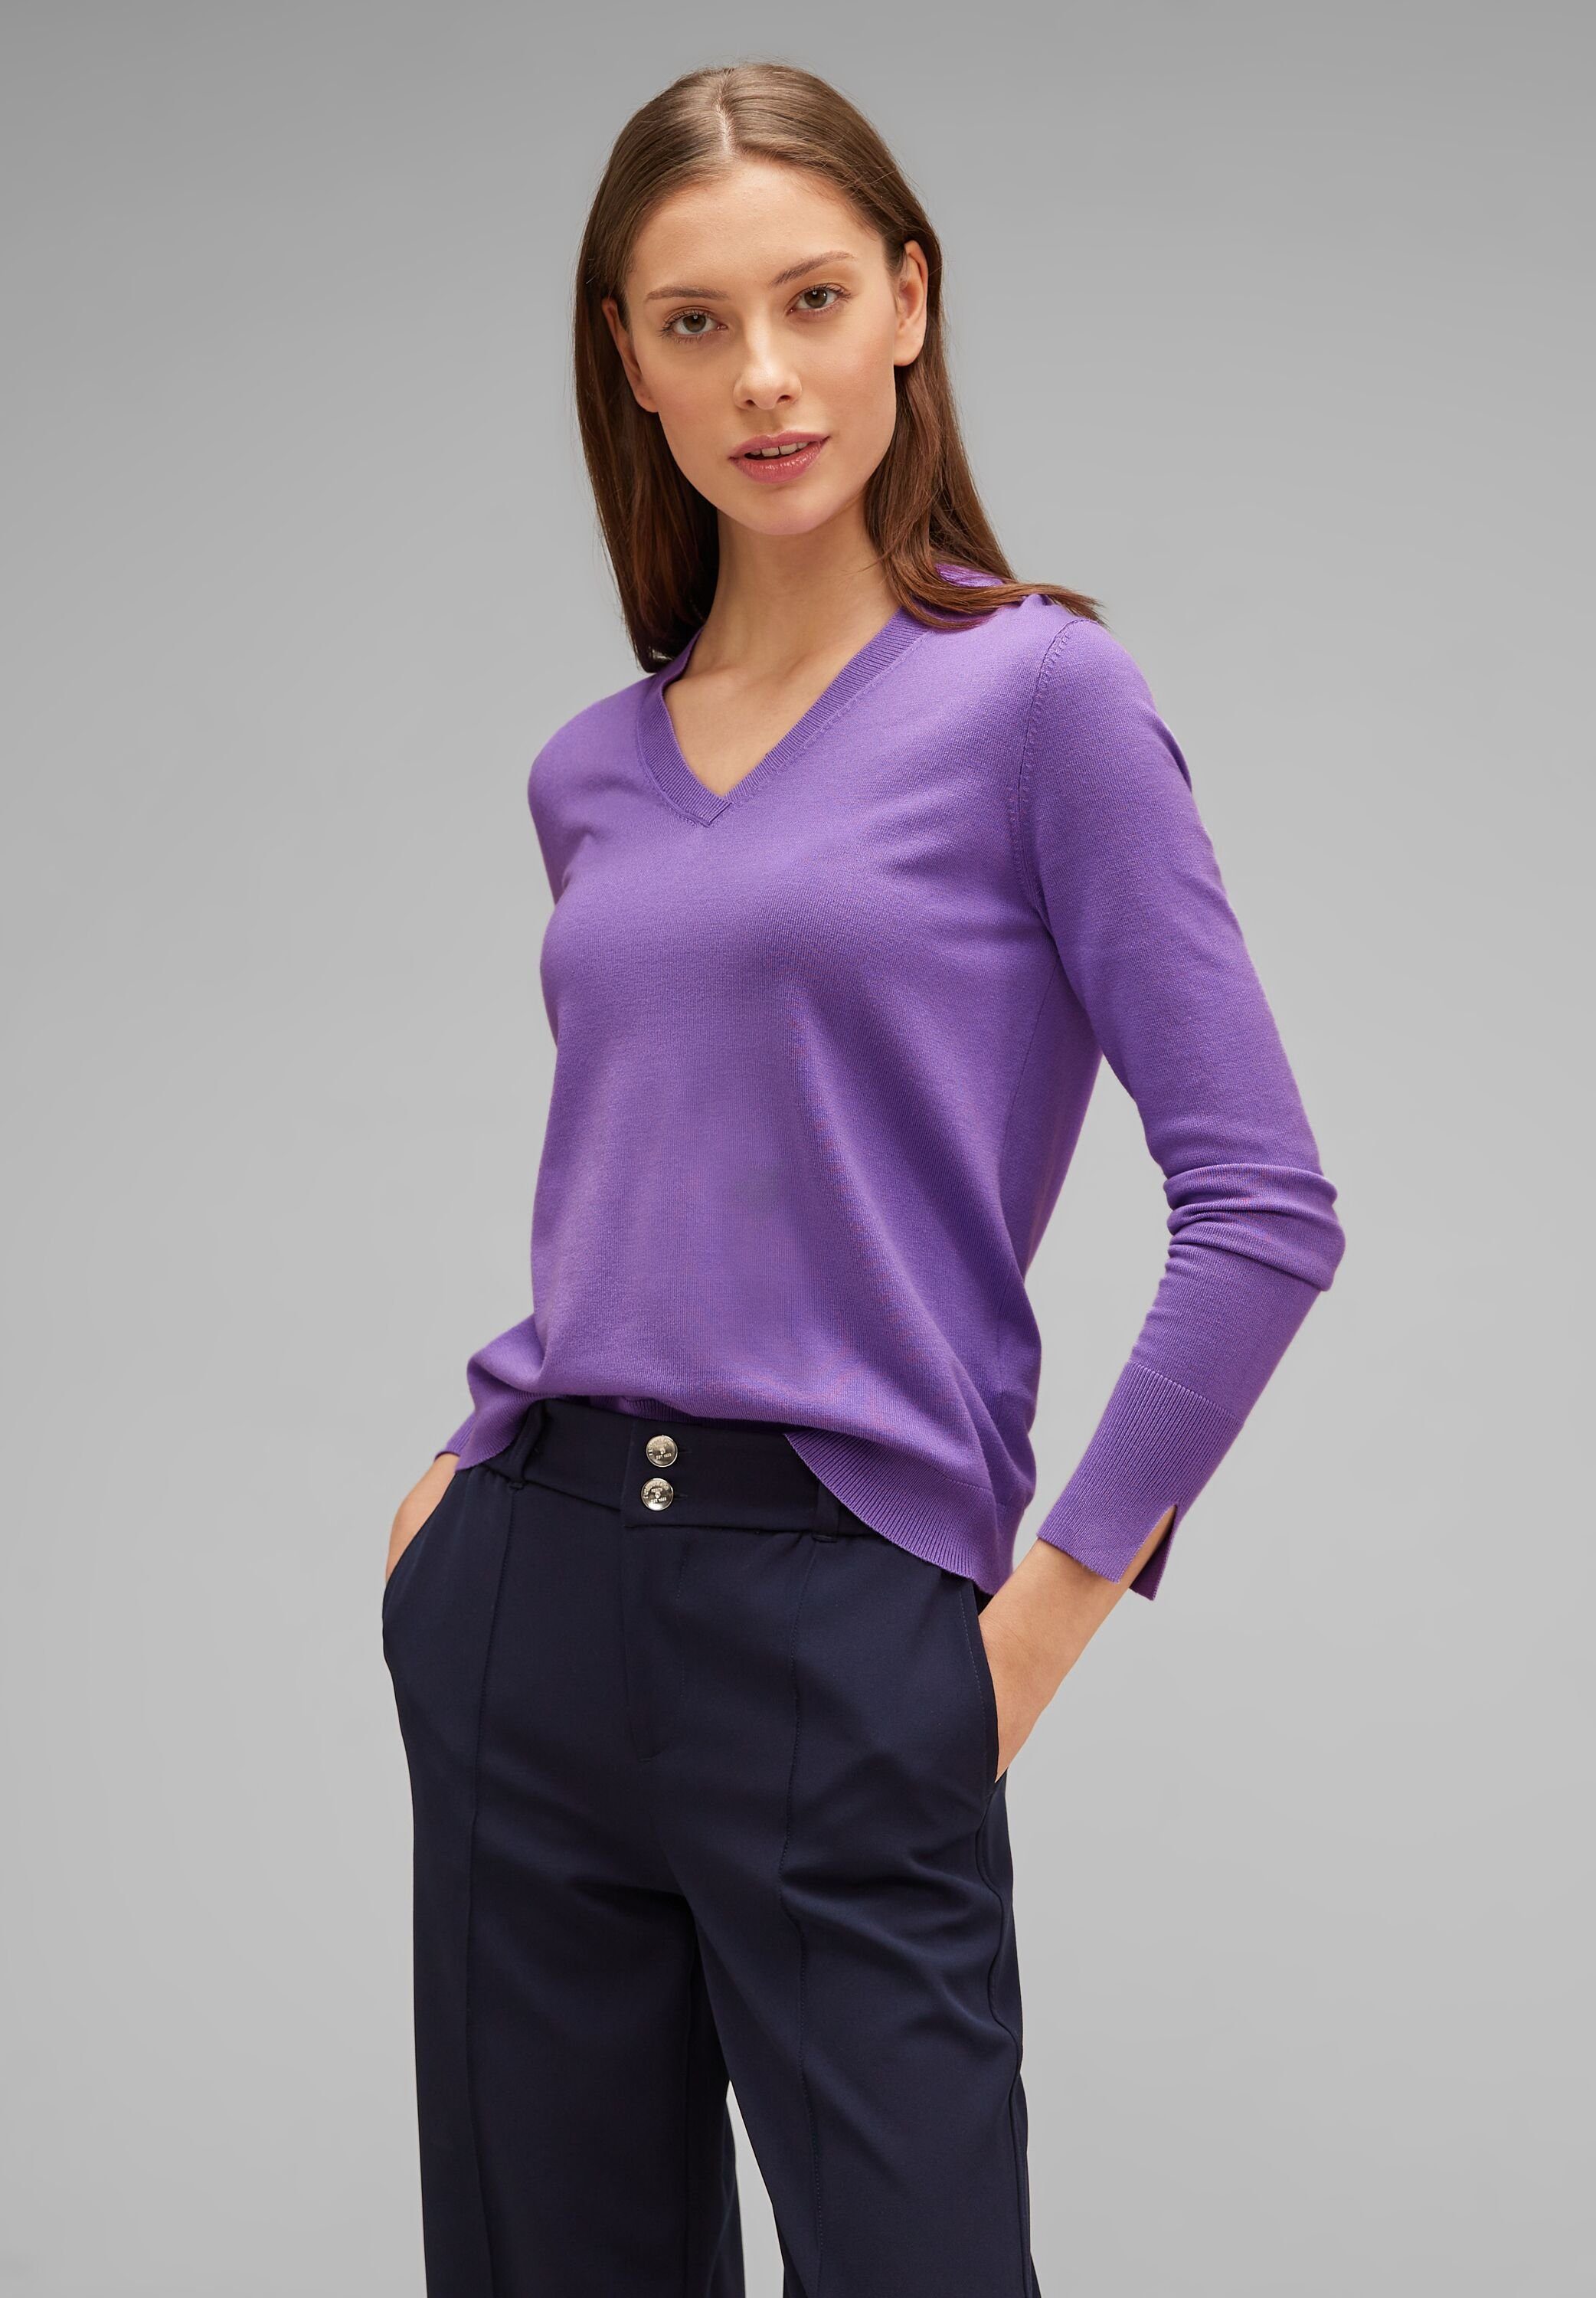 Materialmix lupine lilac aus ONE V-Ausschnitt-Pullover STREET softem